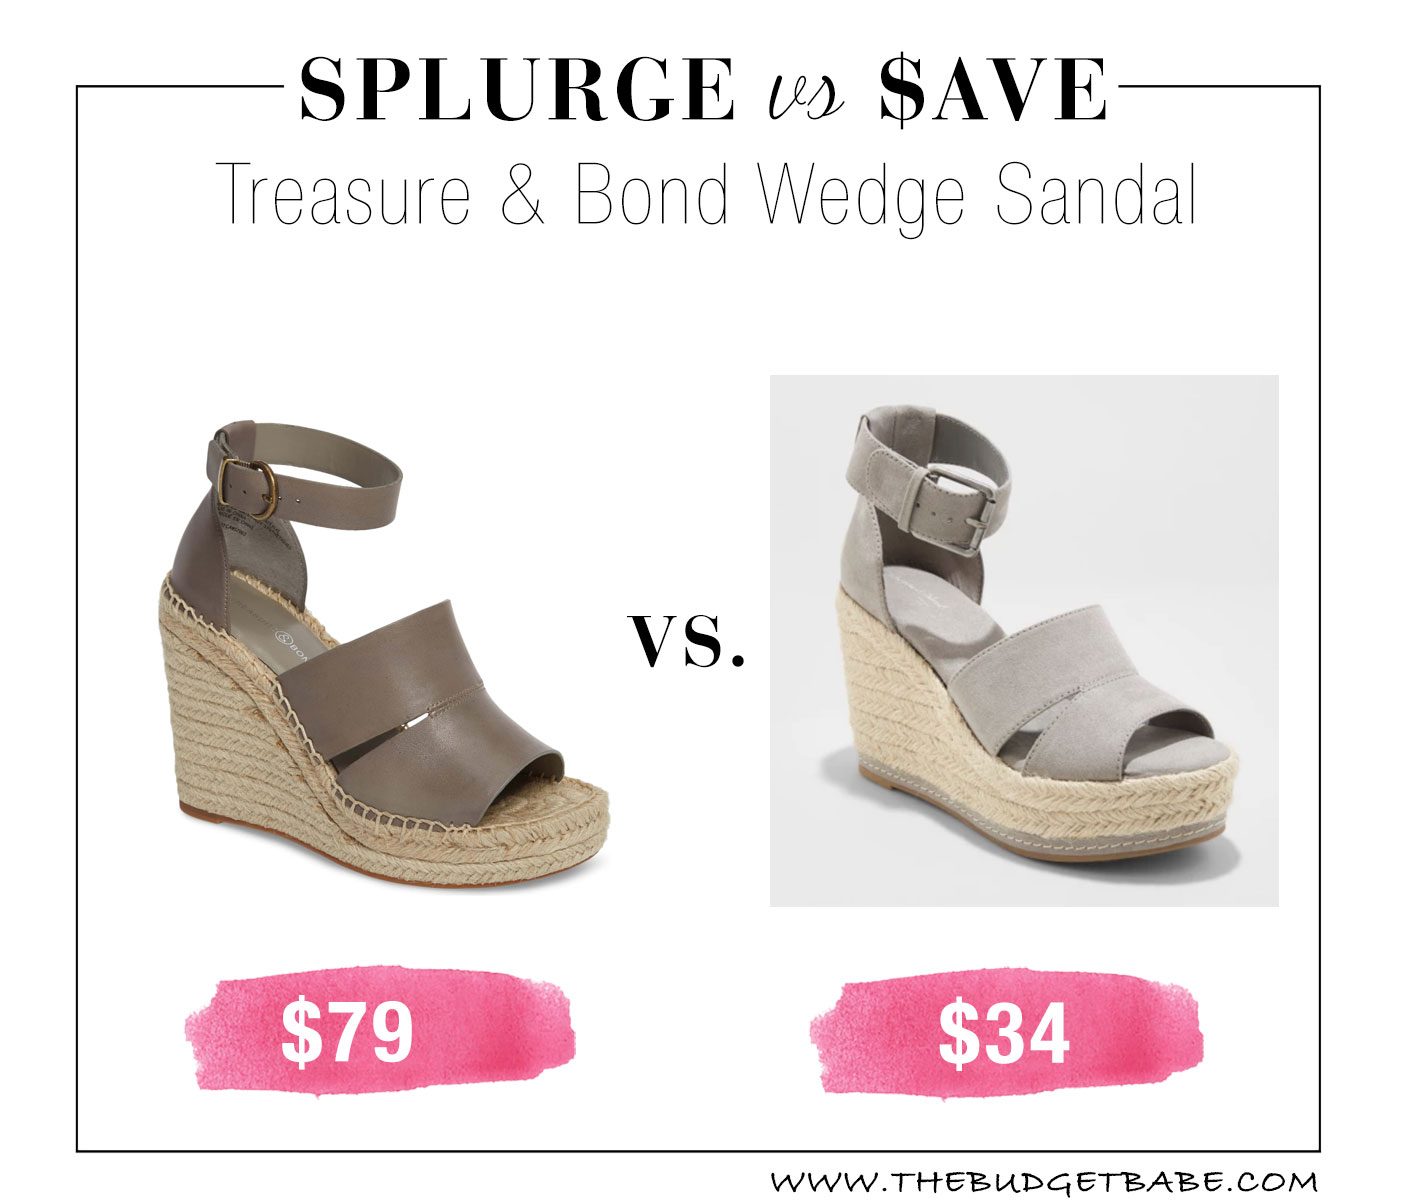 Splurge versus Save on the summer's It sandal!